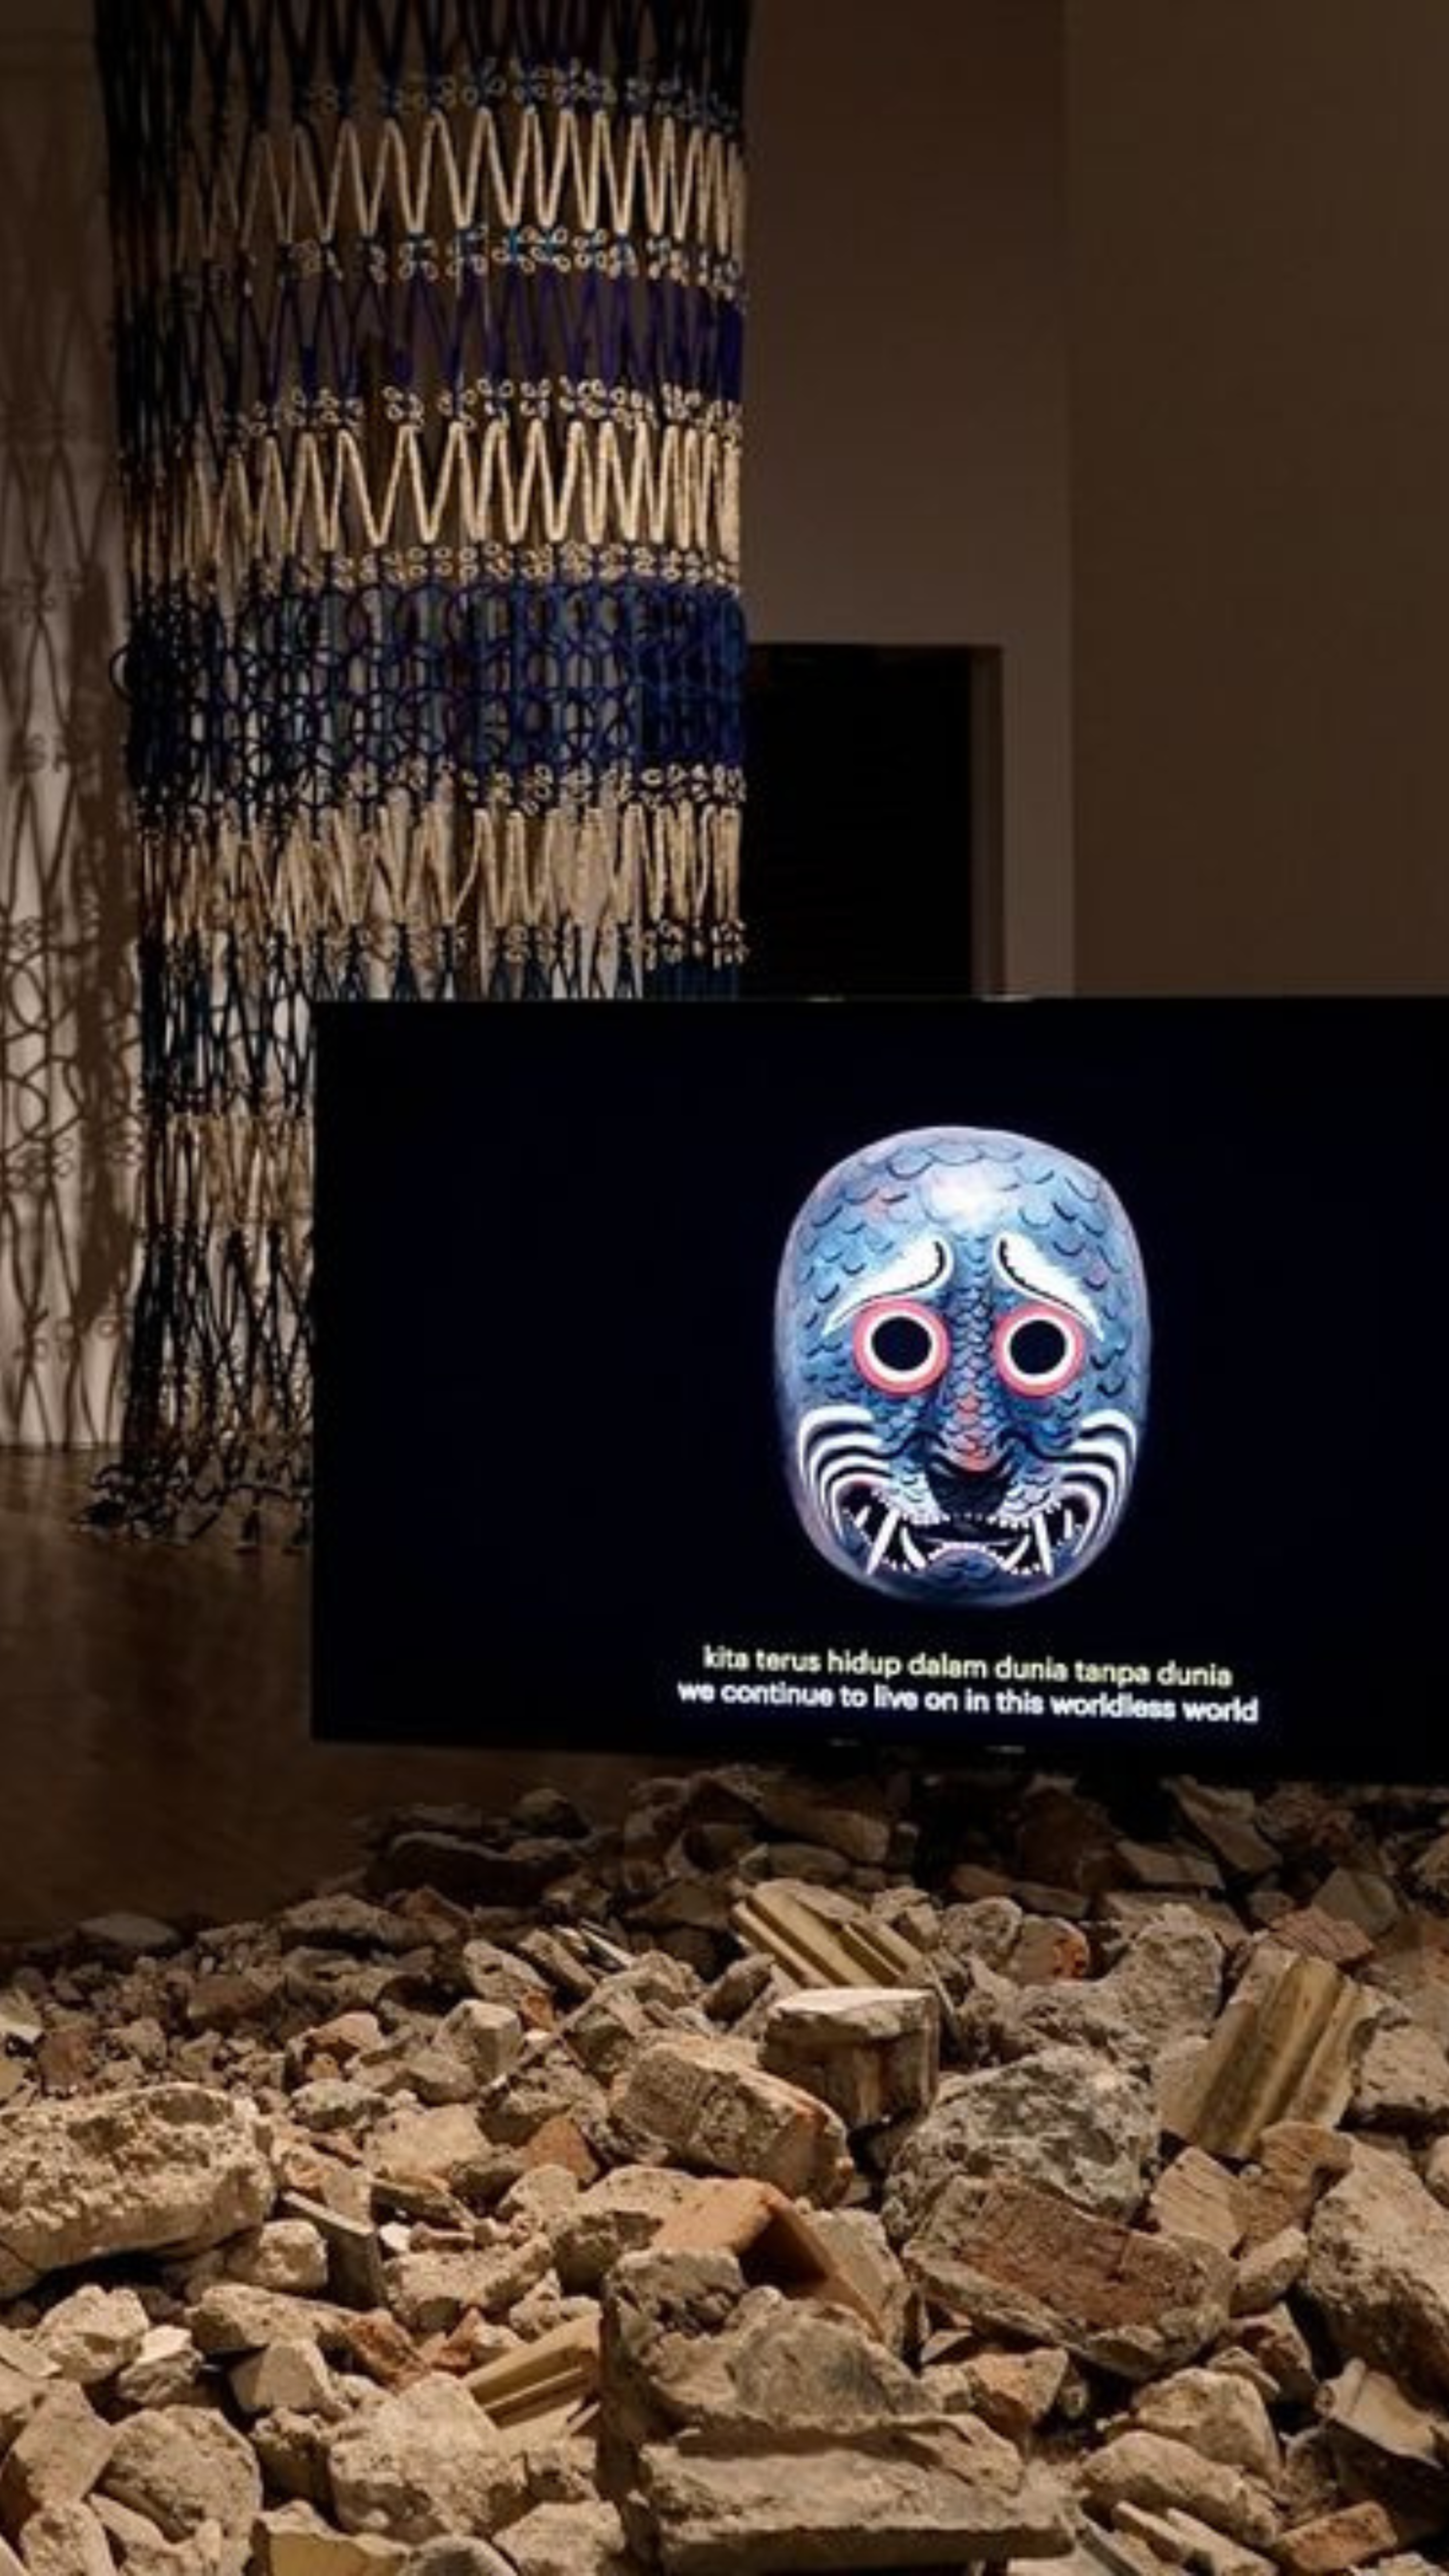 Une installation artistique présentant un masque décoré sur un écran au-dessus des décombres, avec une phrase en indonésien et sa traduction anglaise affichée.